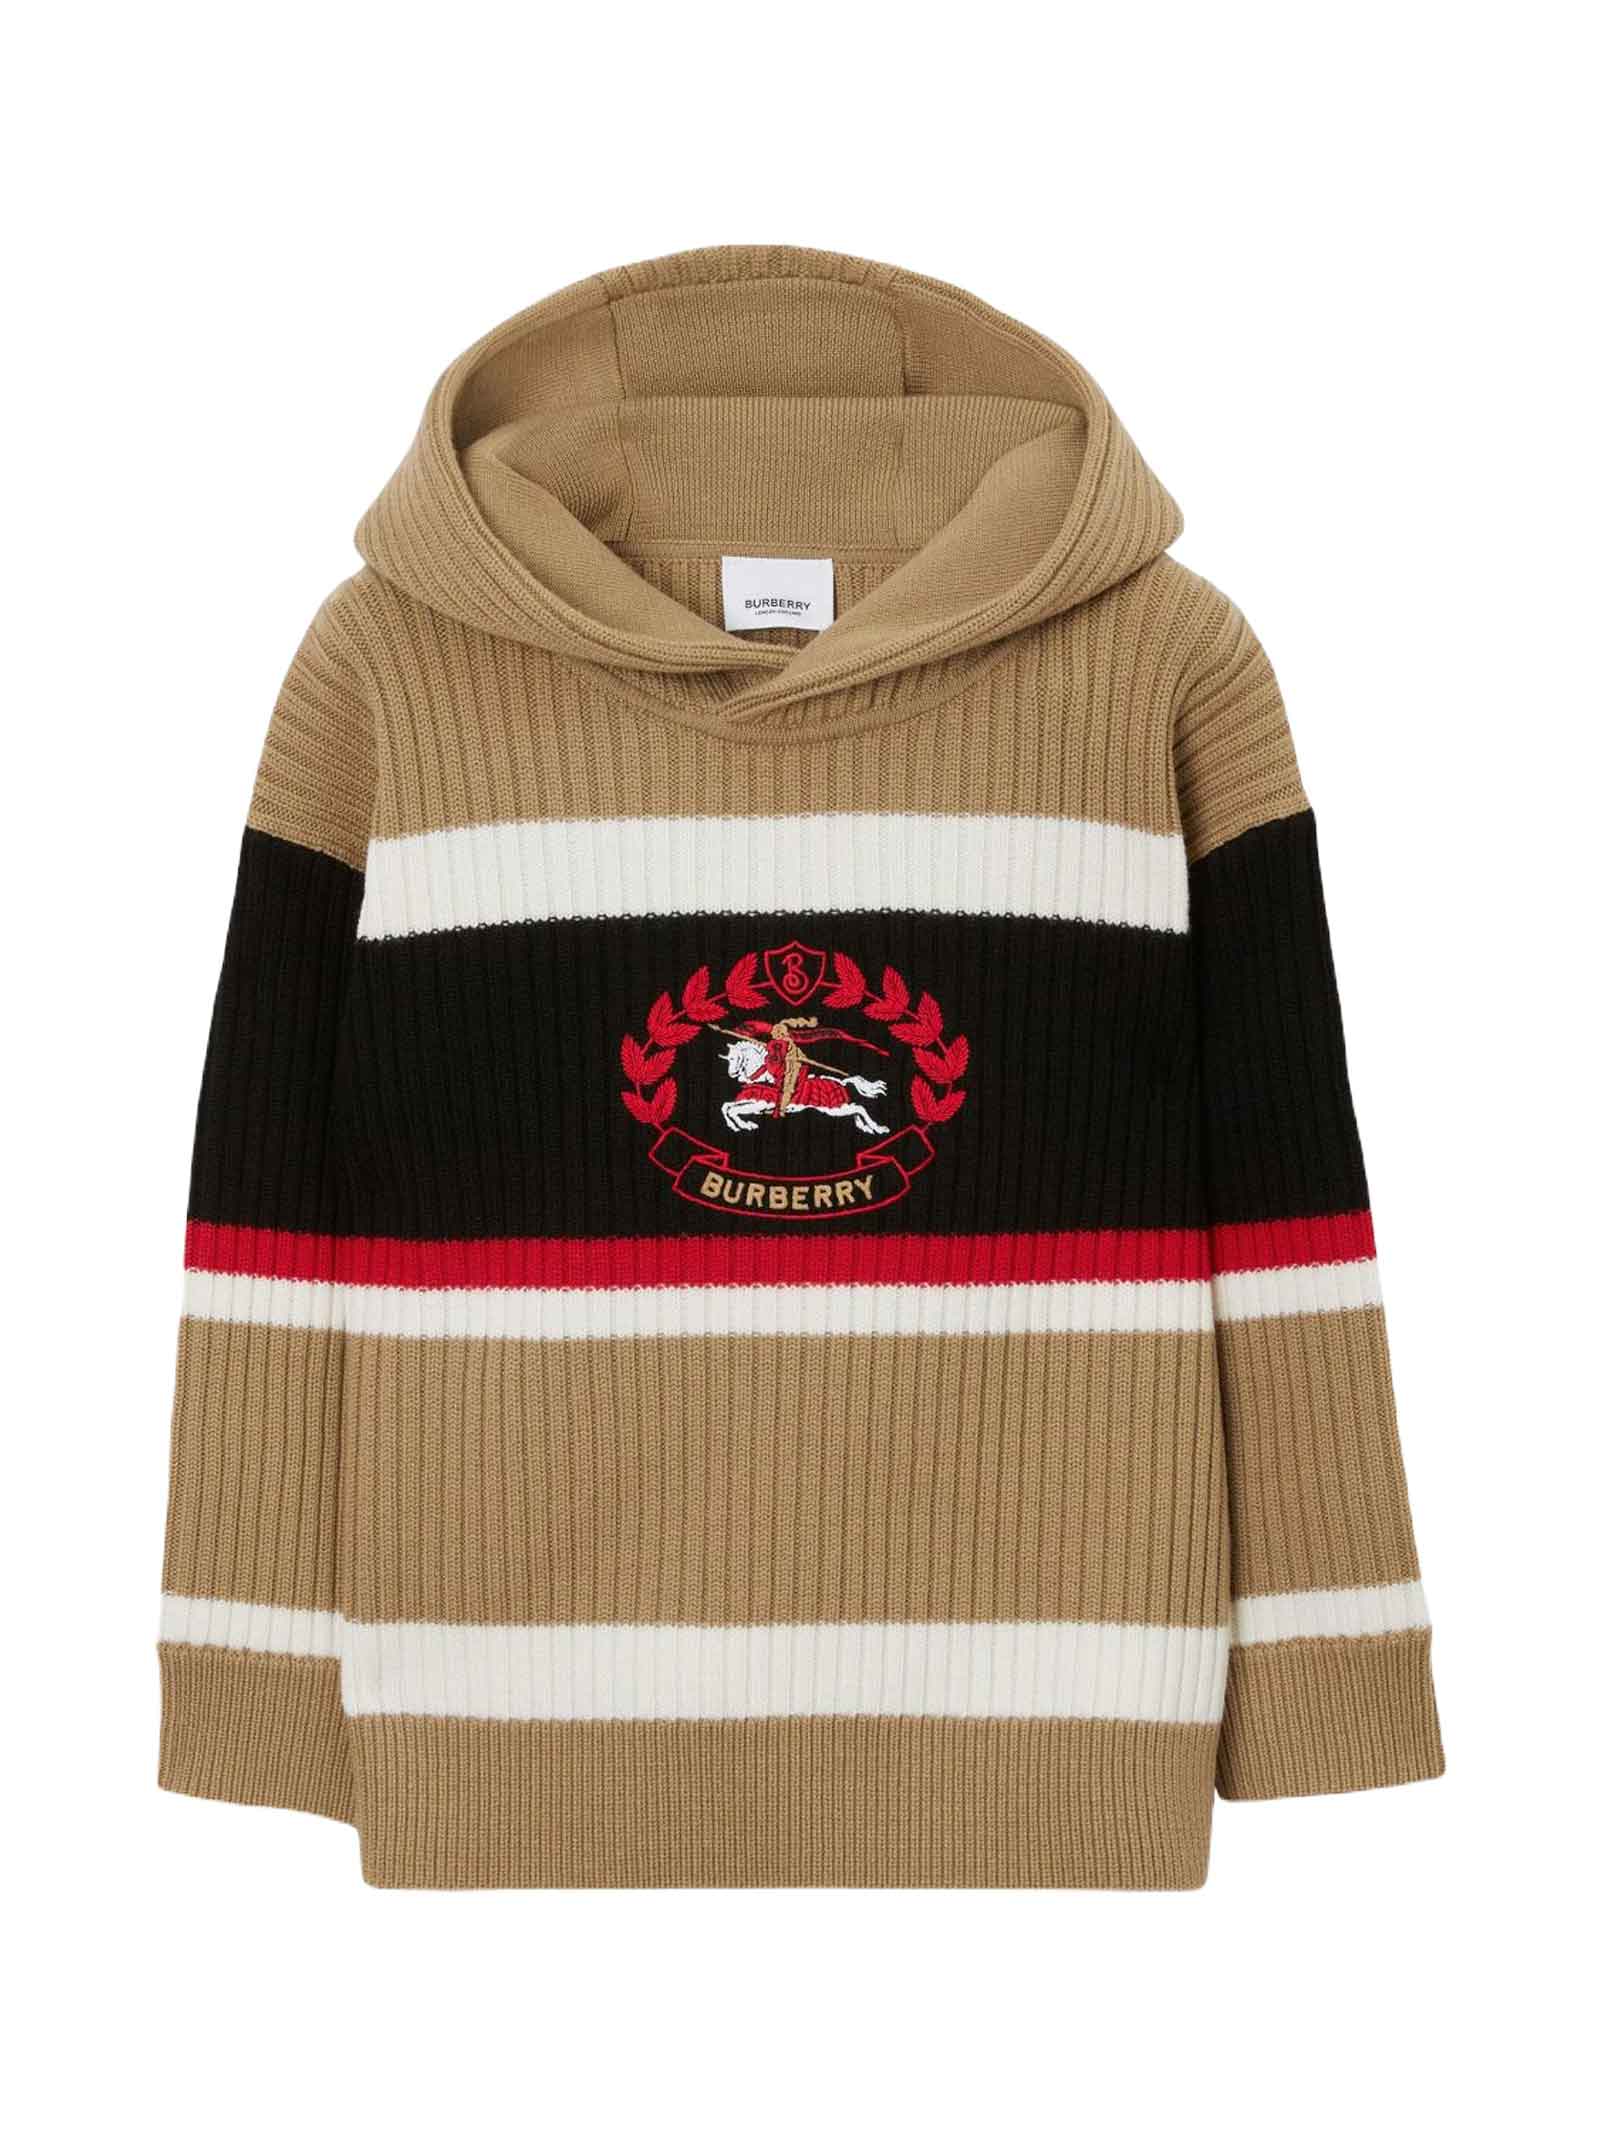 Burberry Kids' Brown Sweatshirt Boy In Beige